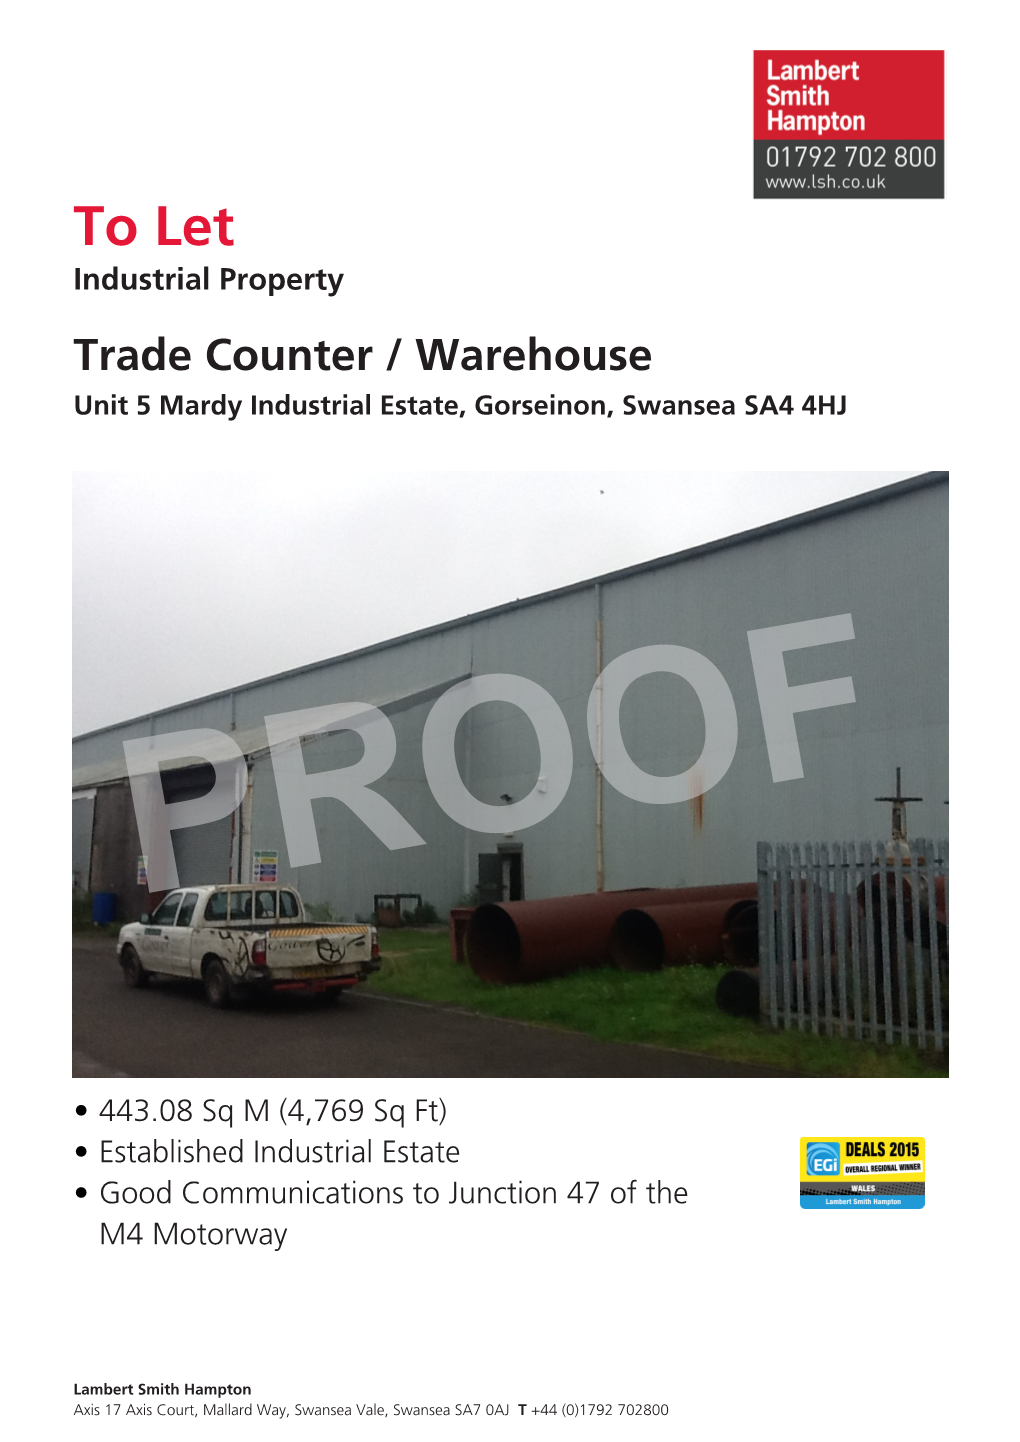 To Let,Unit 5 Mardy Industrial Estate, Gorseinon, Swansea SA4